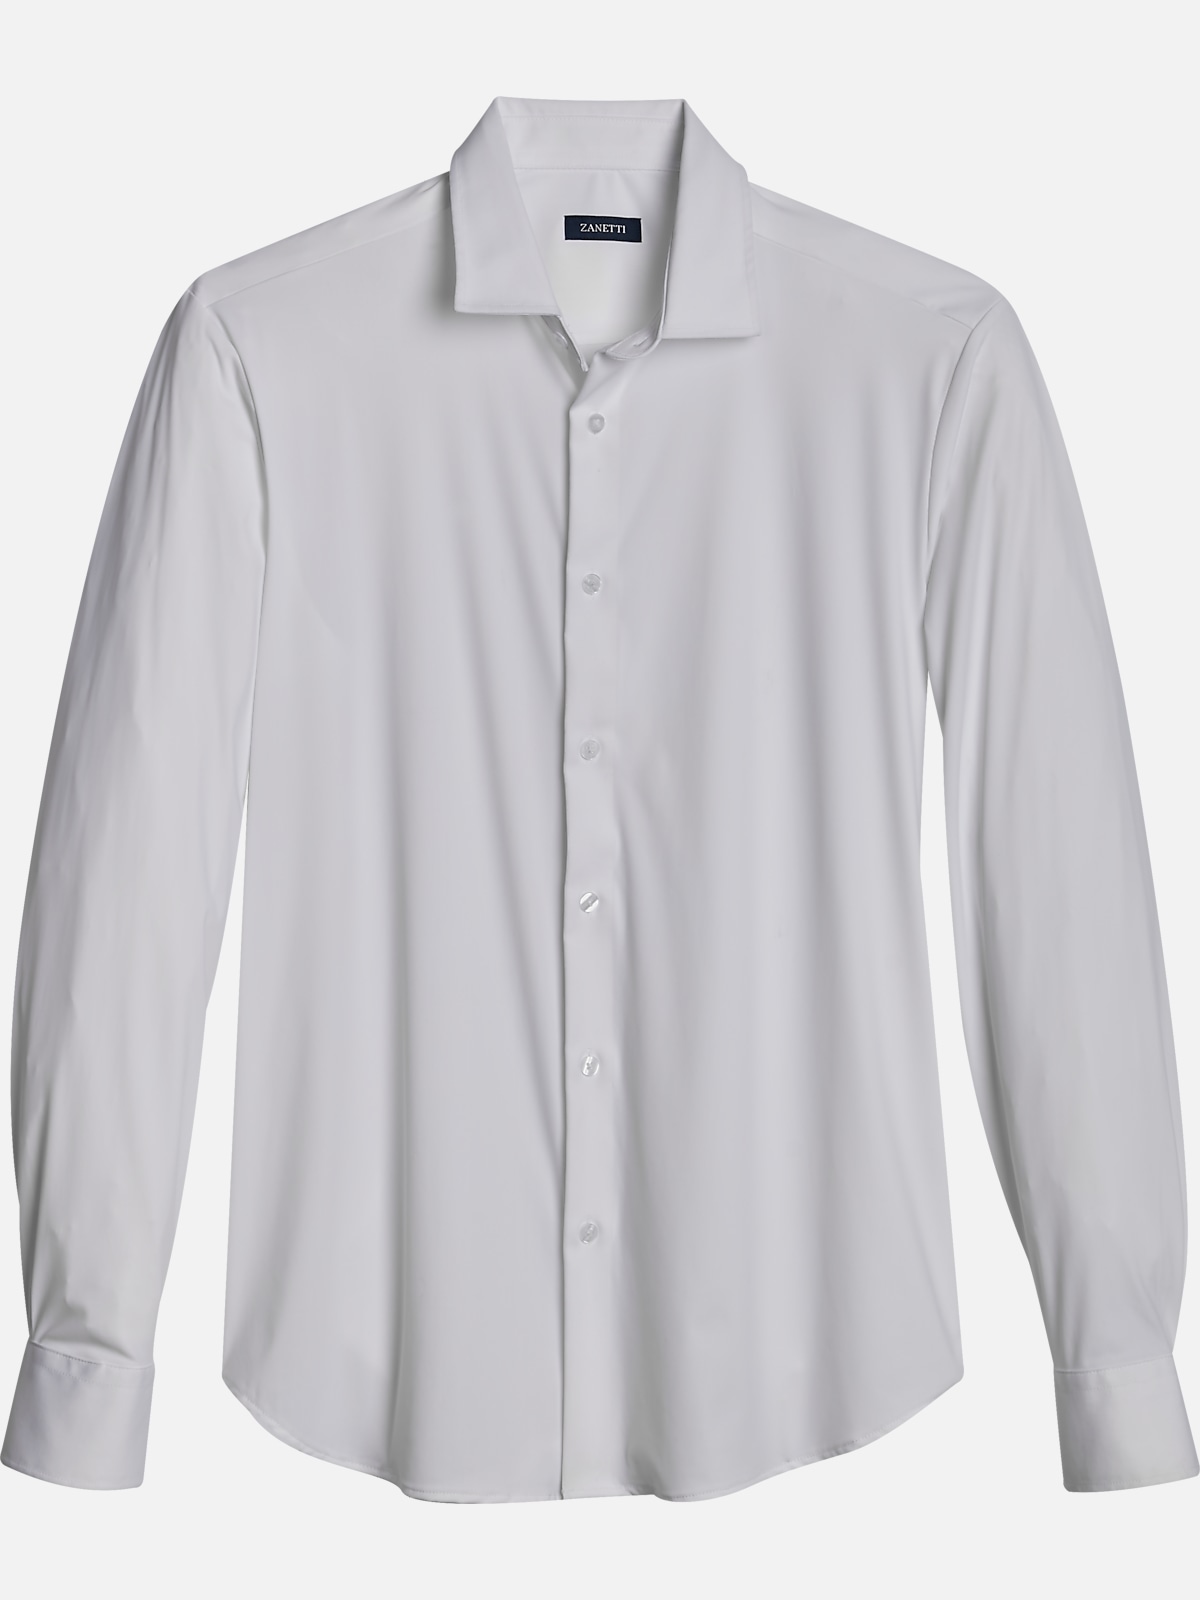 Zanetti Modern Fit Spread Collar Sport Shirt | All Sale| Men's Wearhouse